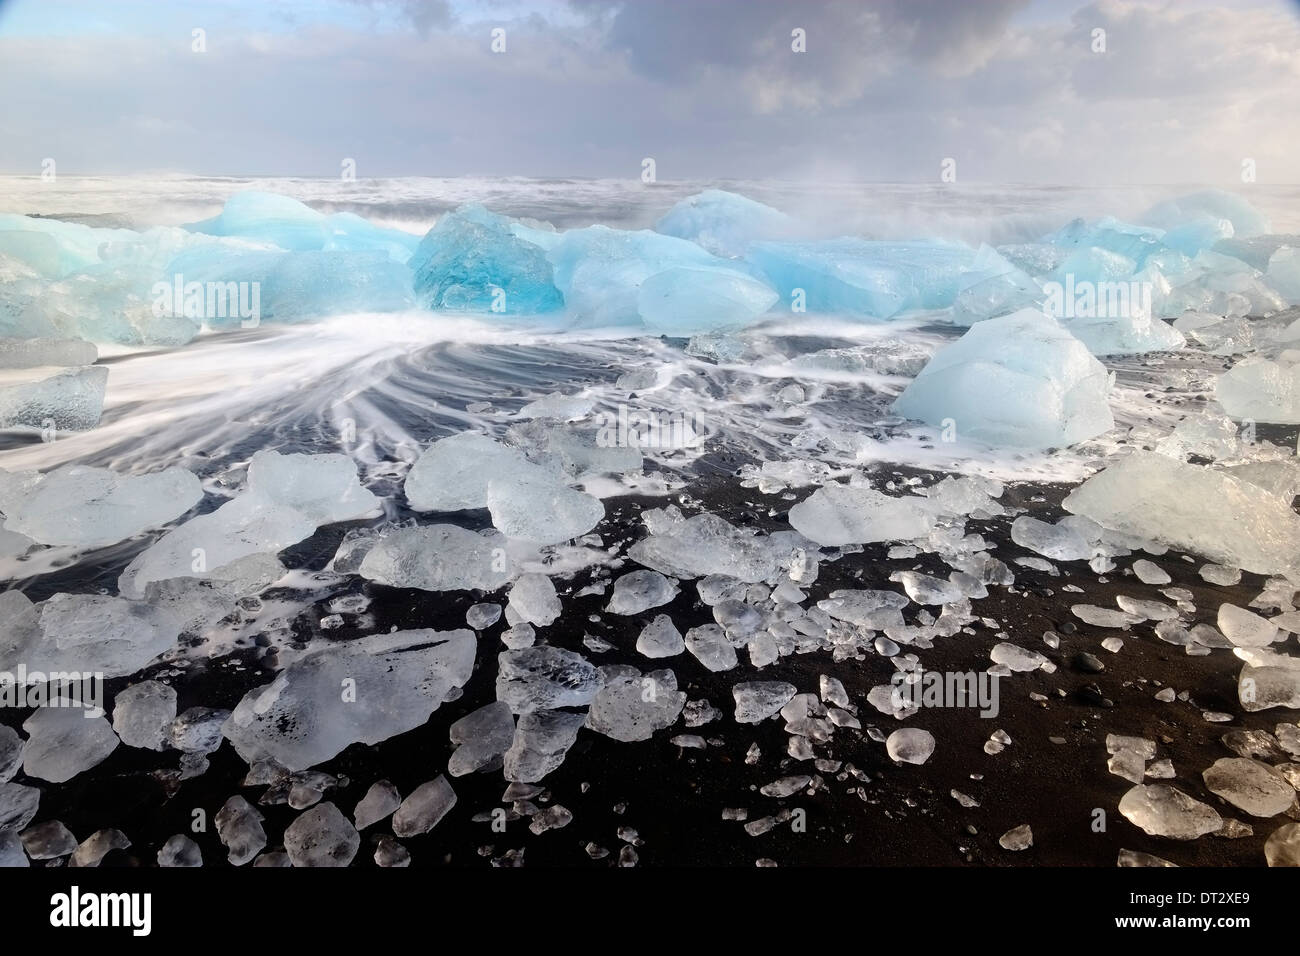 Les icebergs et les vagues sur la plage de Jokulsarlon, région polaire, le sud de l'Islande Banque D'Images